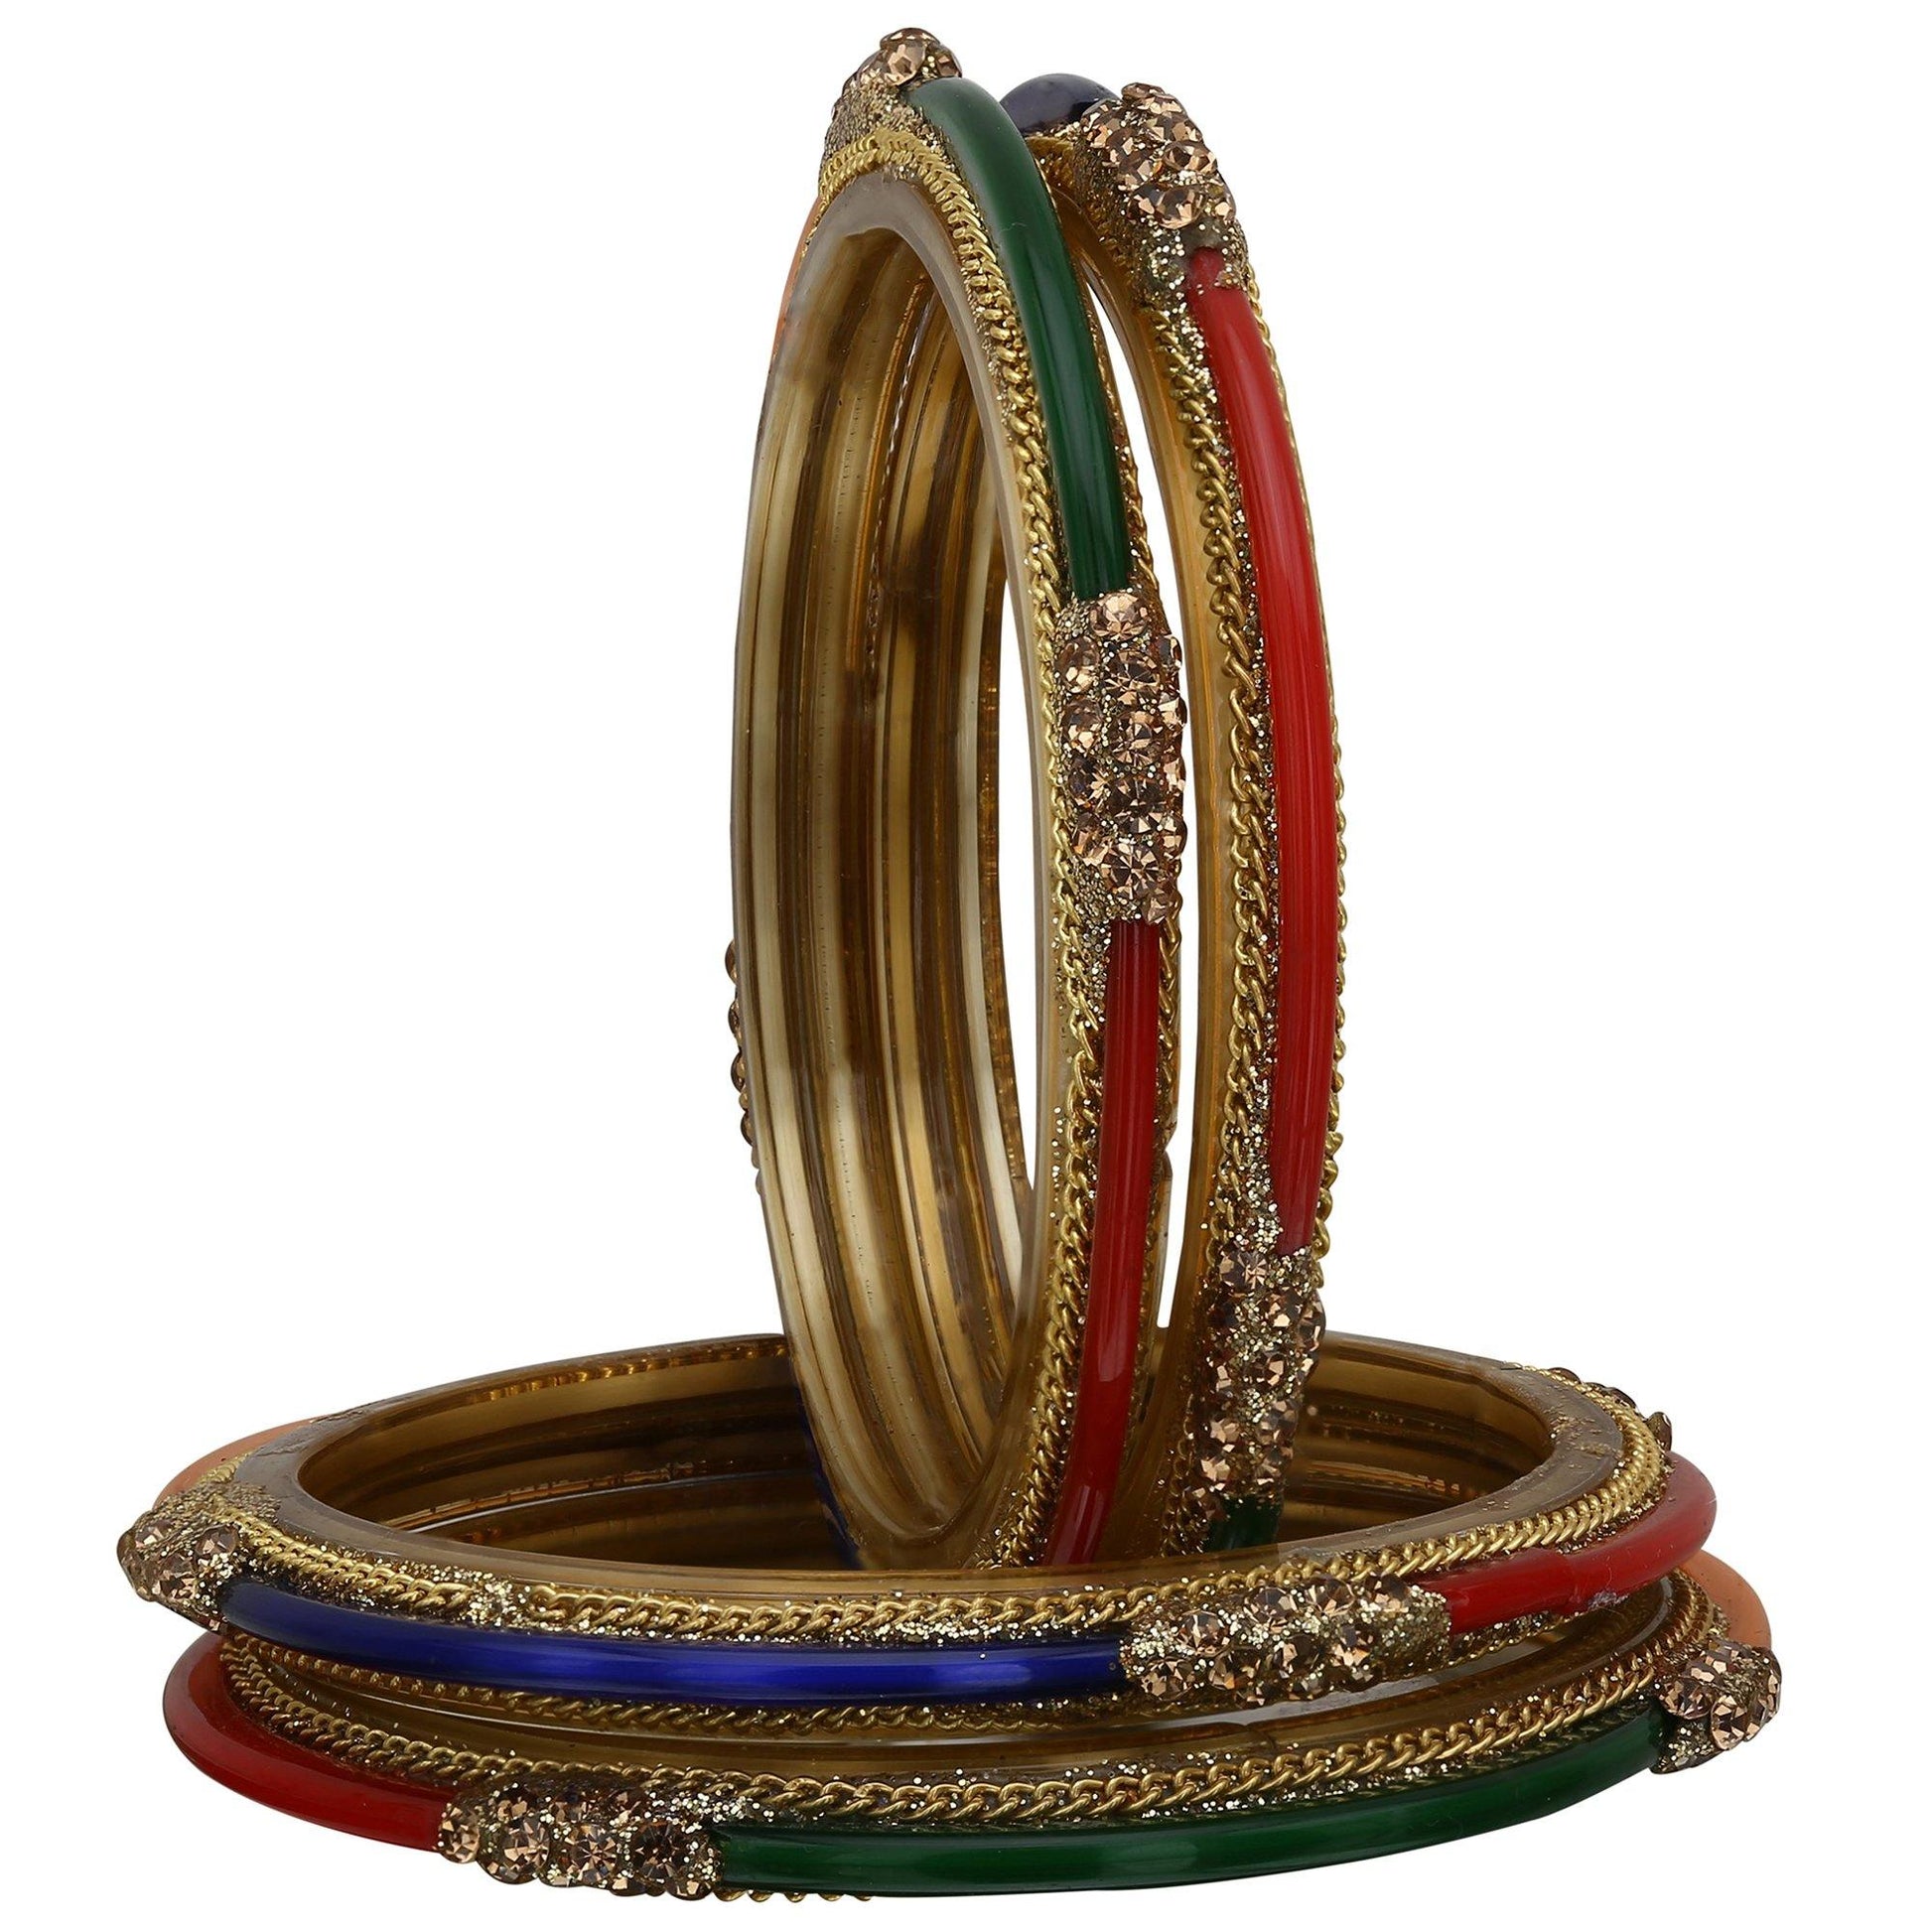 sukriti designer handmade glossy glass bangles for women – set of 4